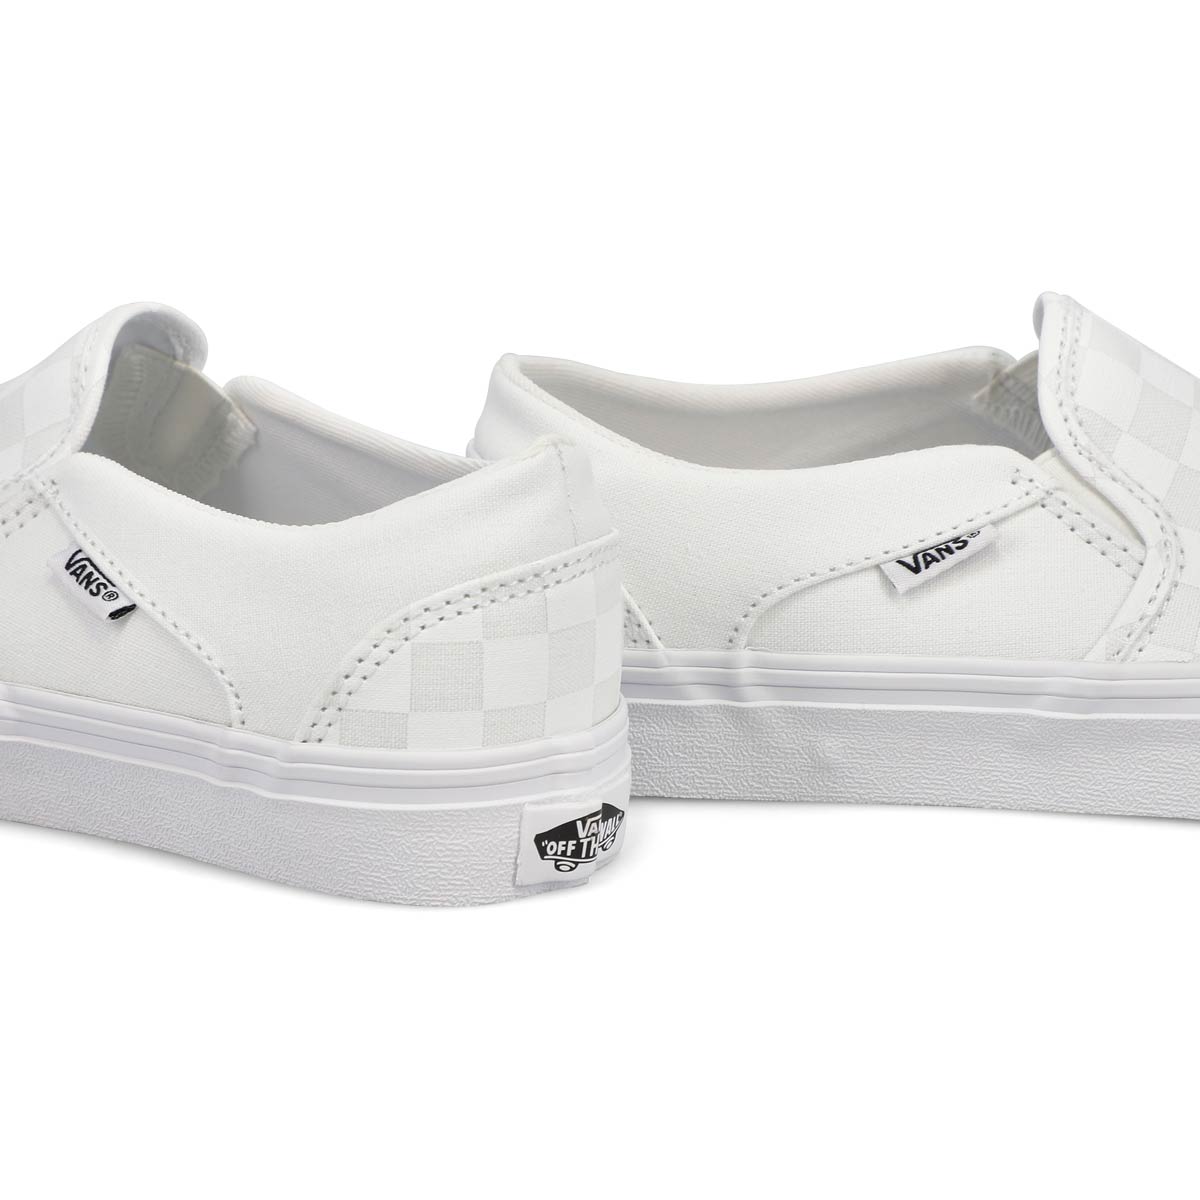 Women's Asher Sneakers - Checkered White/White